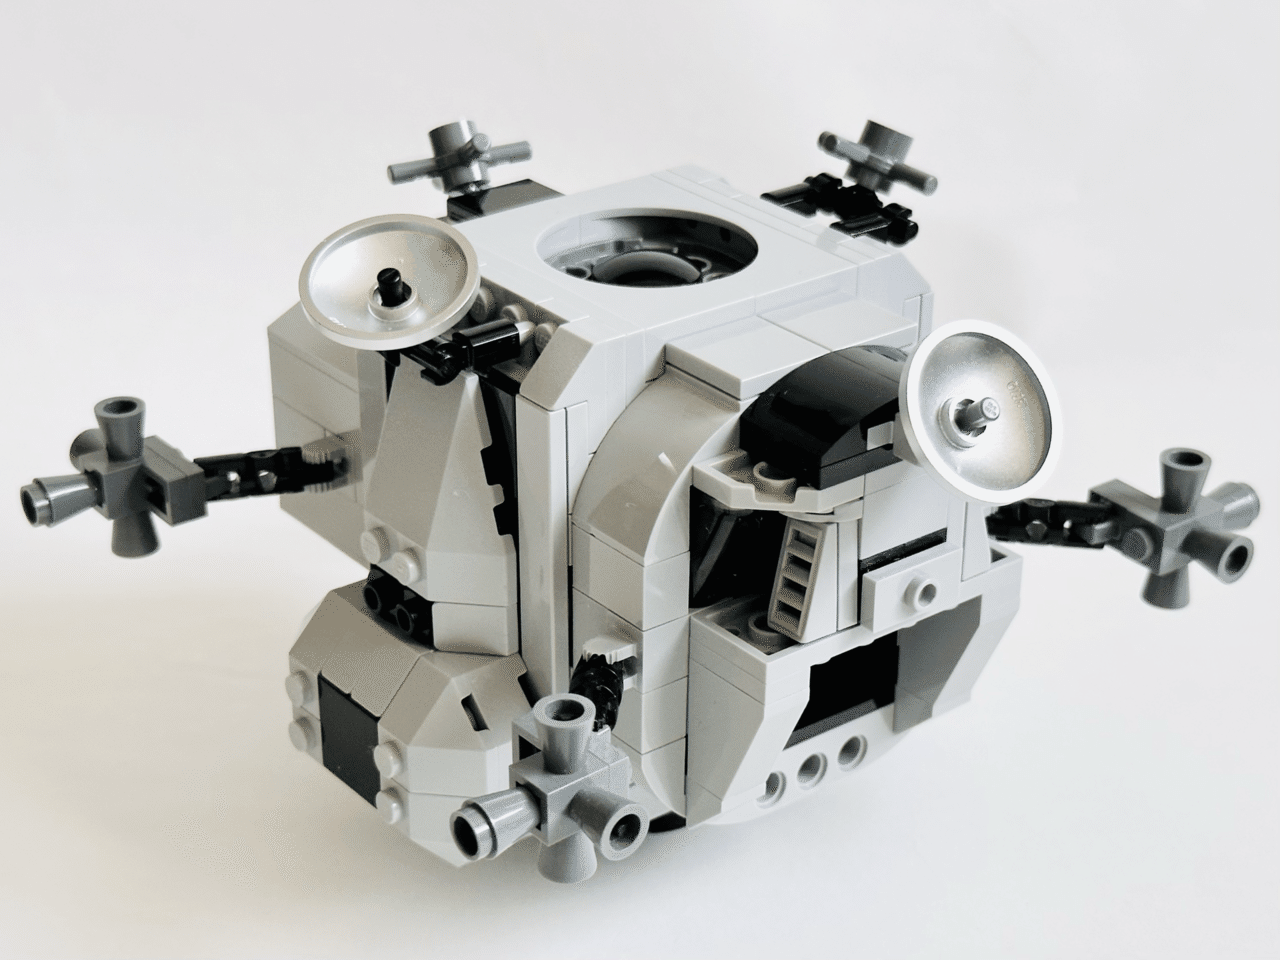 レゴ アポロ 11 月面着陸船 - 模型/プラモデル